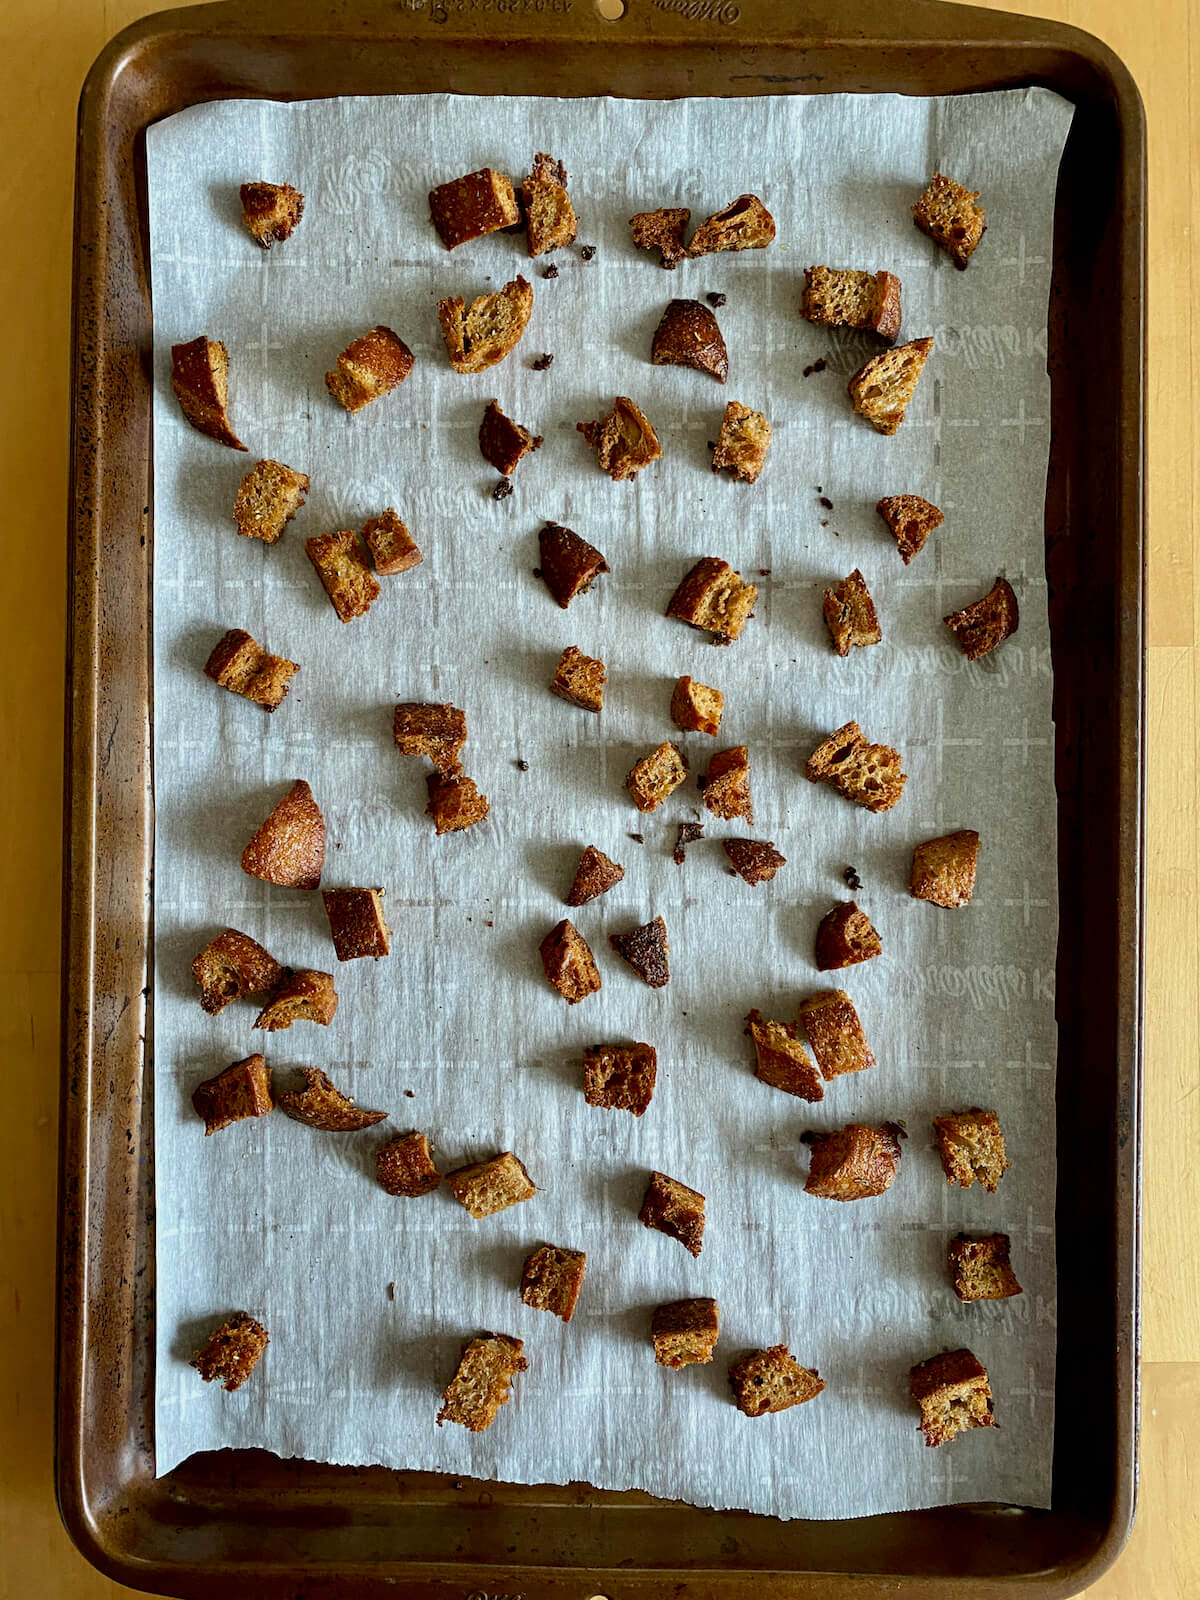 Sourdough croutons on a parchment-lined baking sheet.